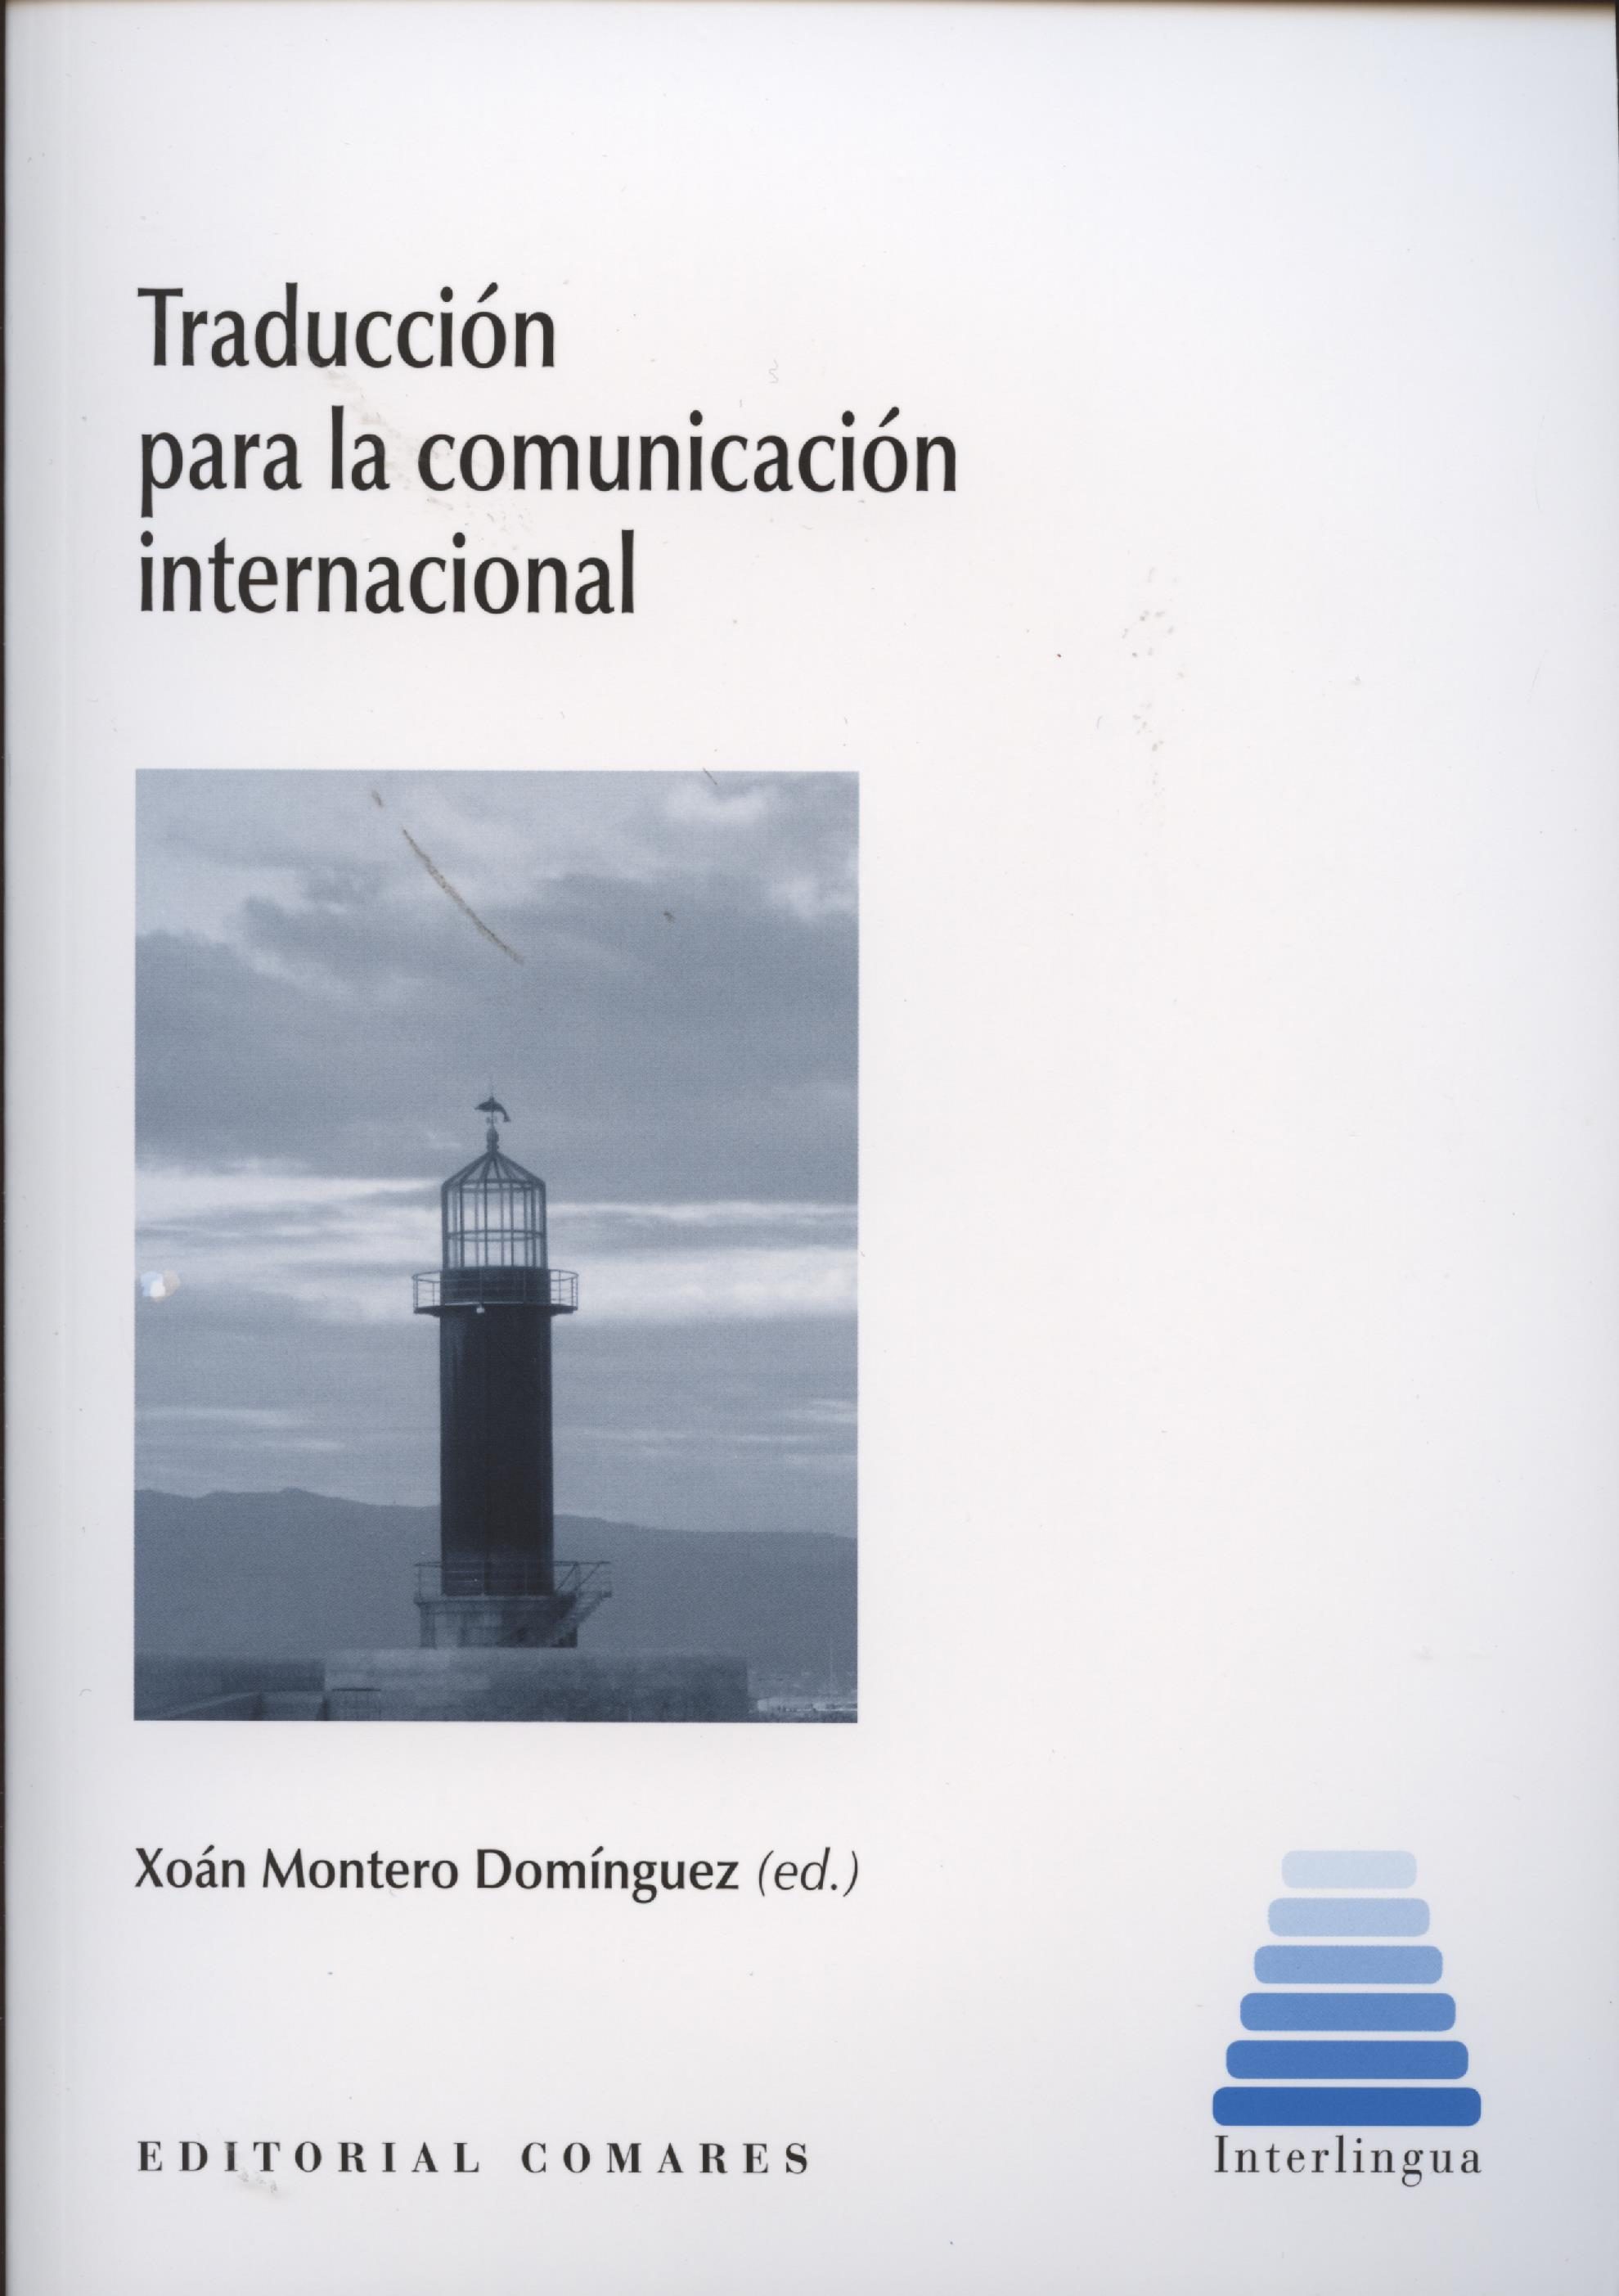 Imagen de portada del libro Traducción para la comunicación internacional